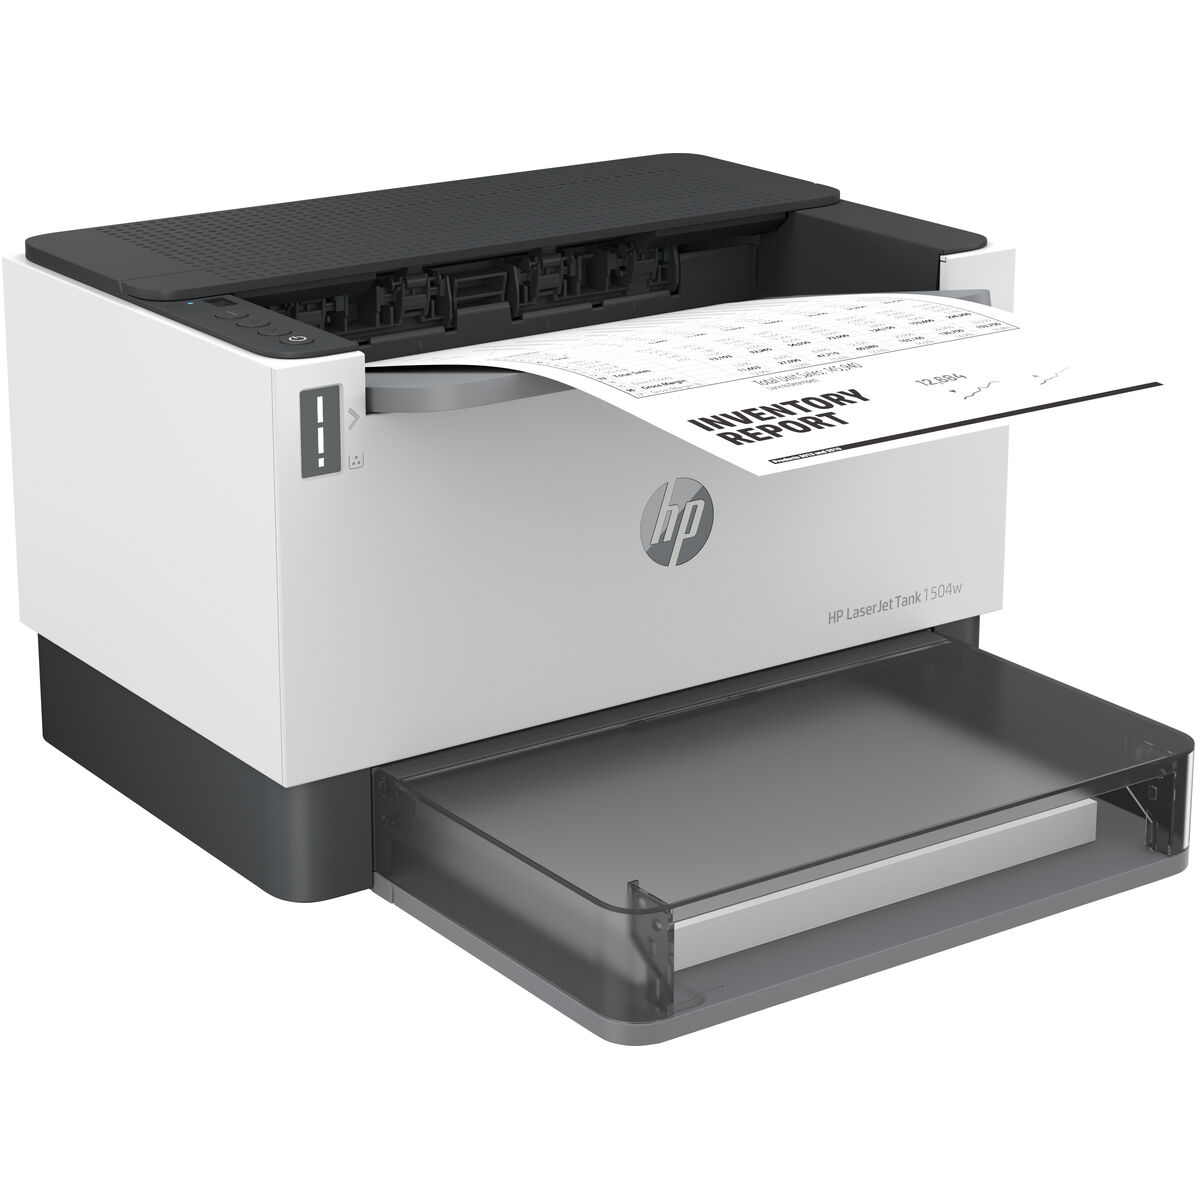 Imprimantă Multifuncțională HP LASERJET TANK 1504W